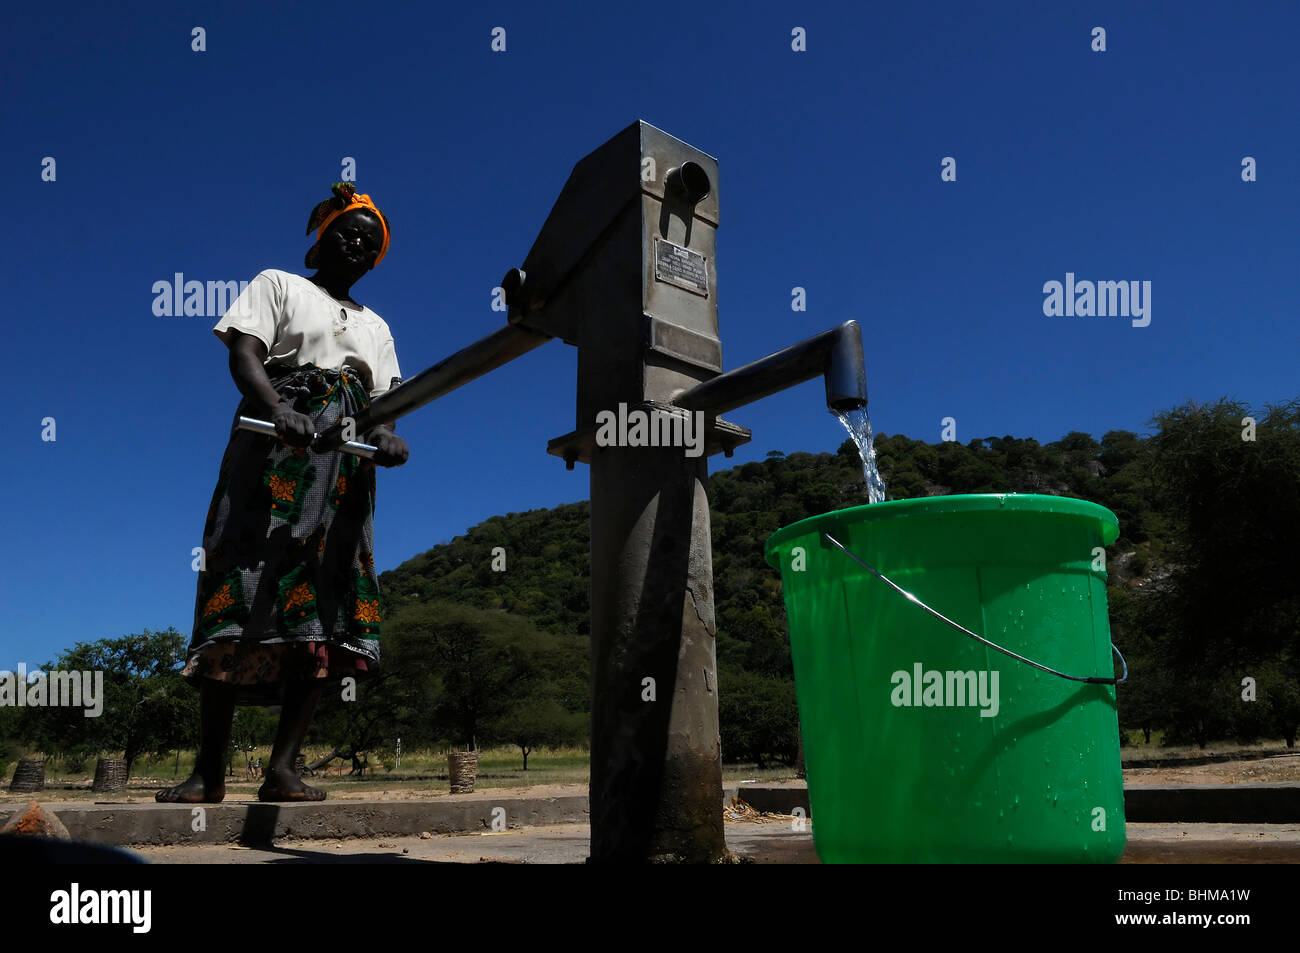 Un villageois à l'aide d'une pompe à motricité humaine en milieu rural pour pomper de l'eau potable d'un puits dans un village en Afrique Malawi Banque D'Images